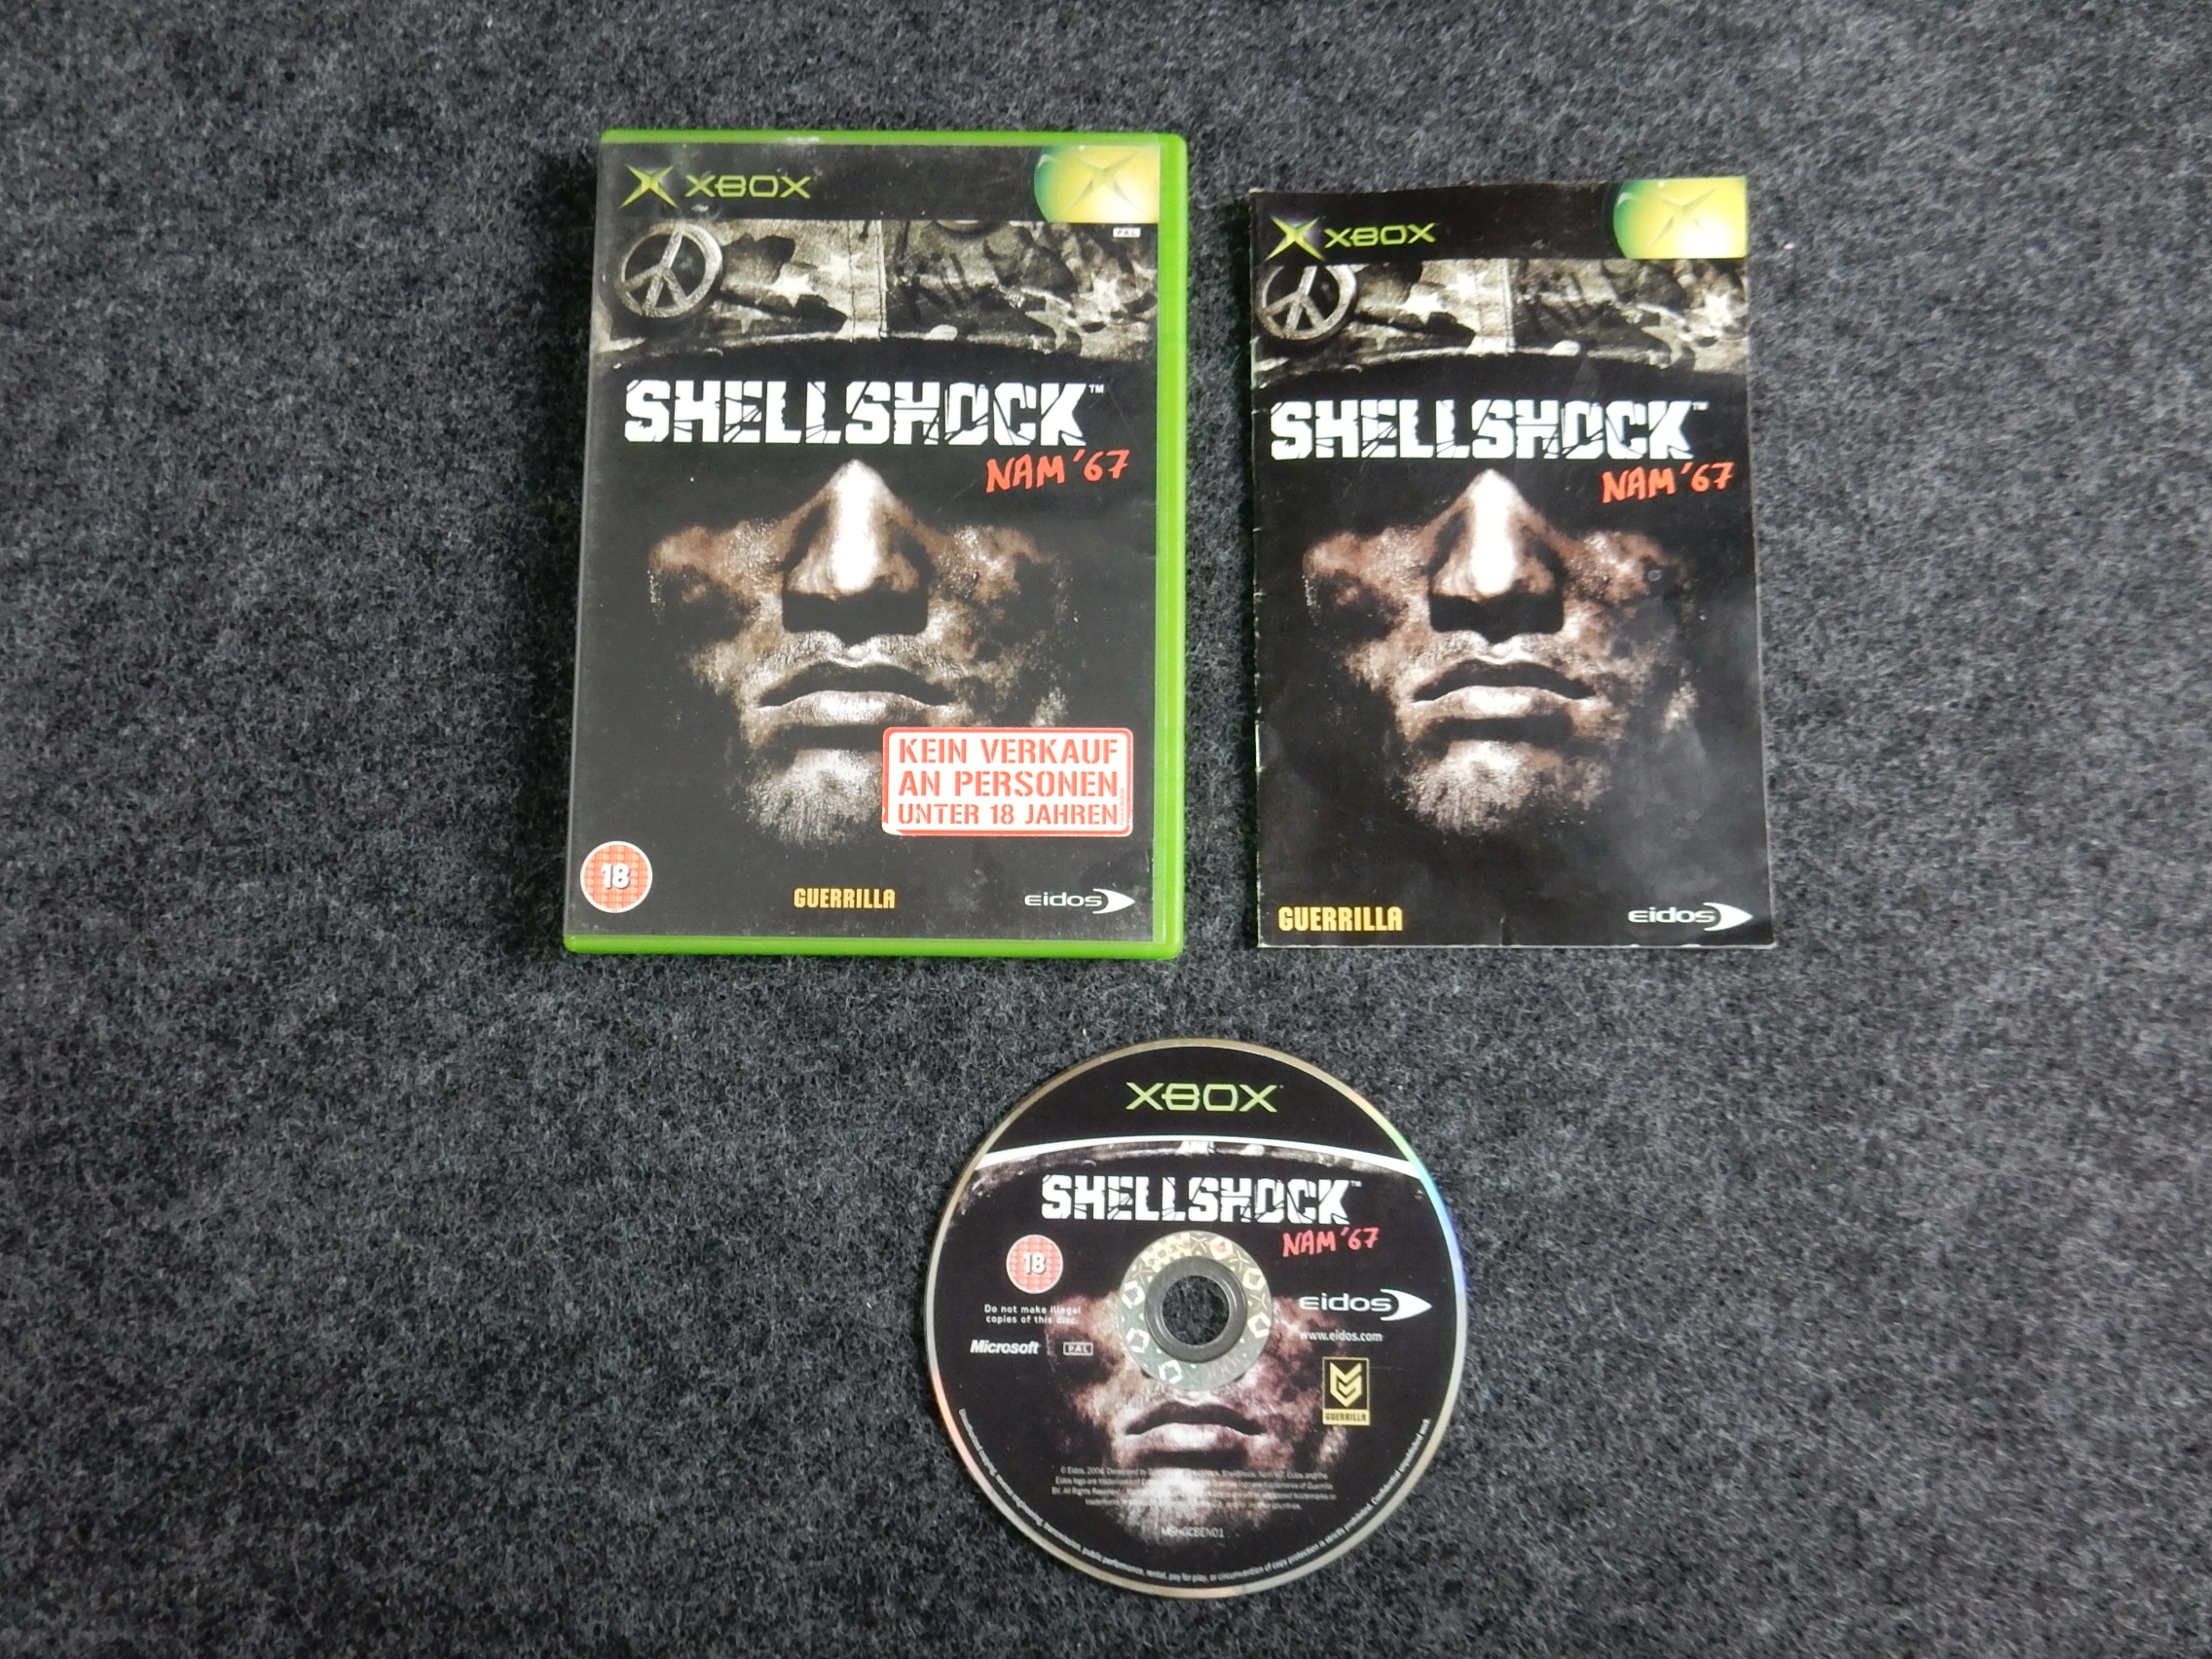 ShellShock: Nam '67 for Xbox